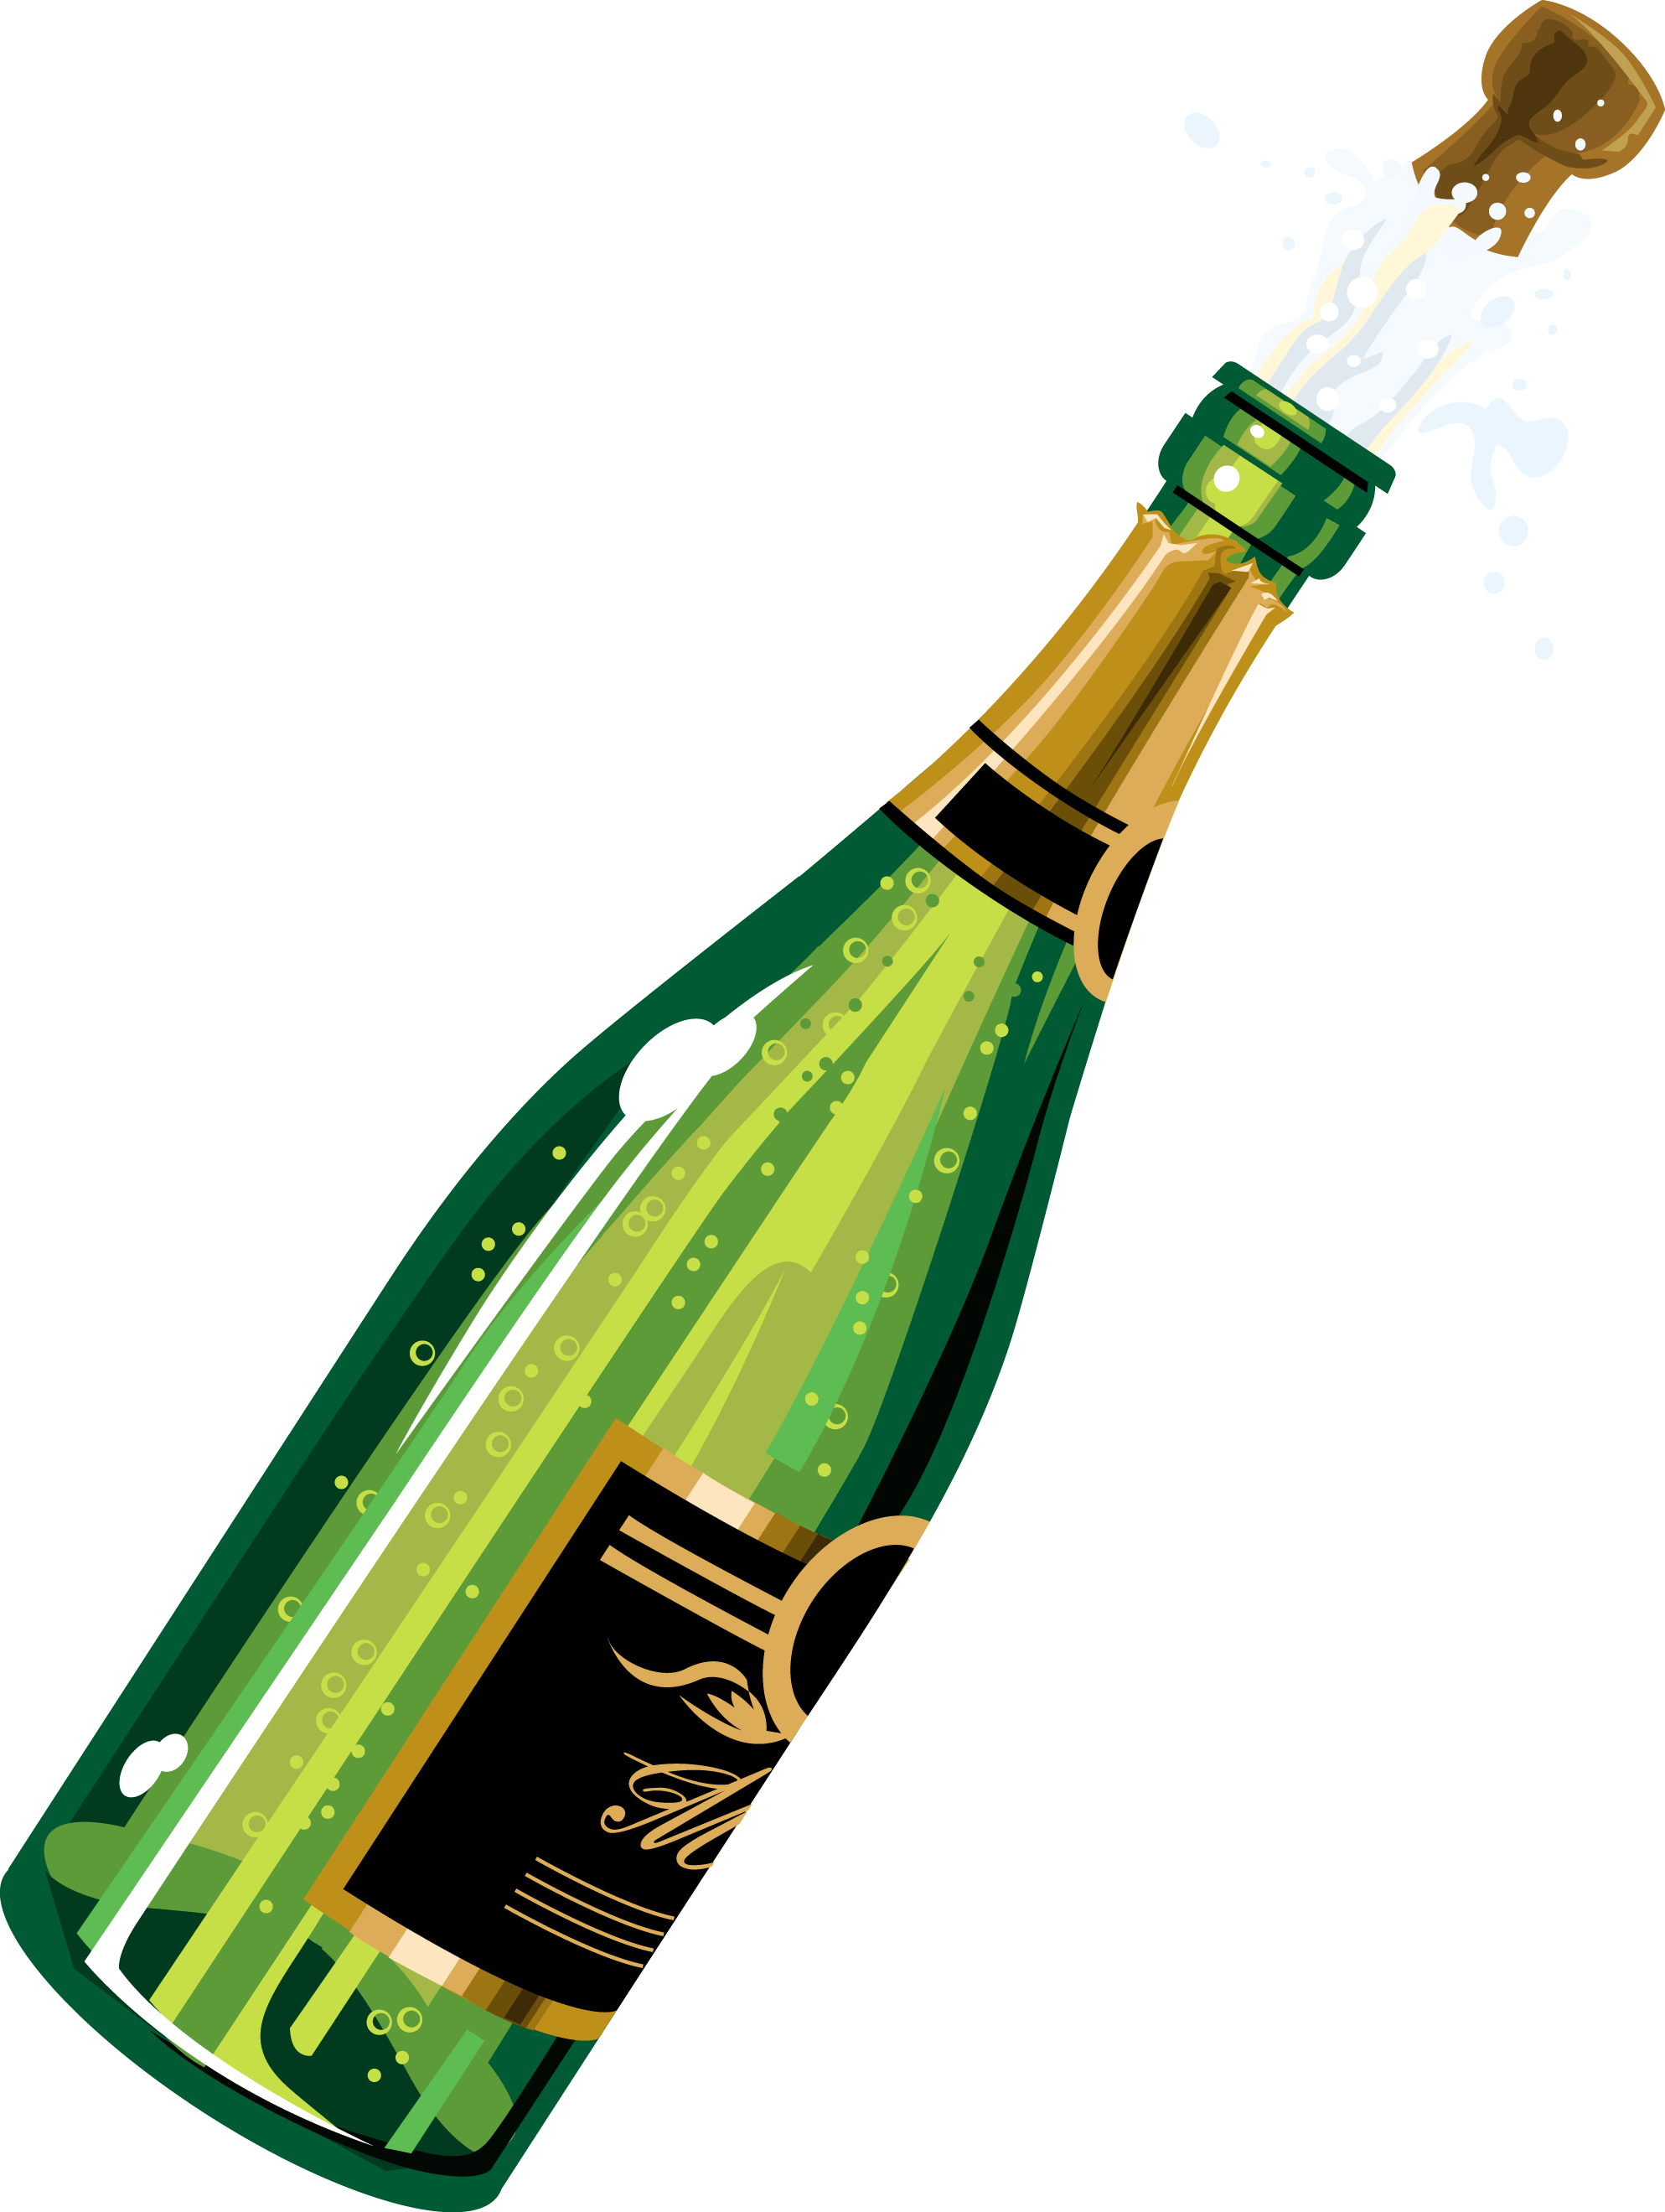 Champagne Bottle Pop - Free .